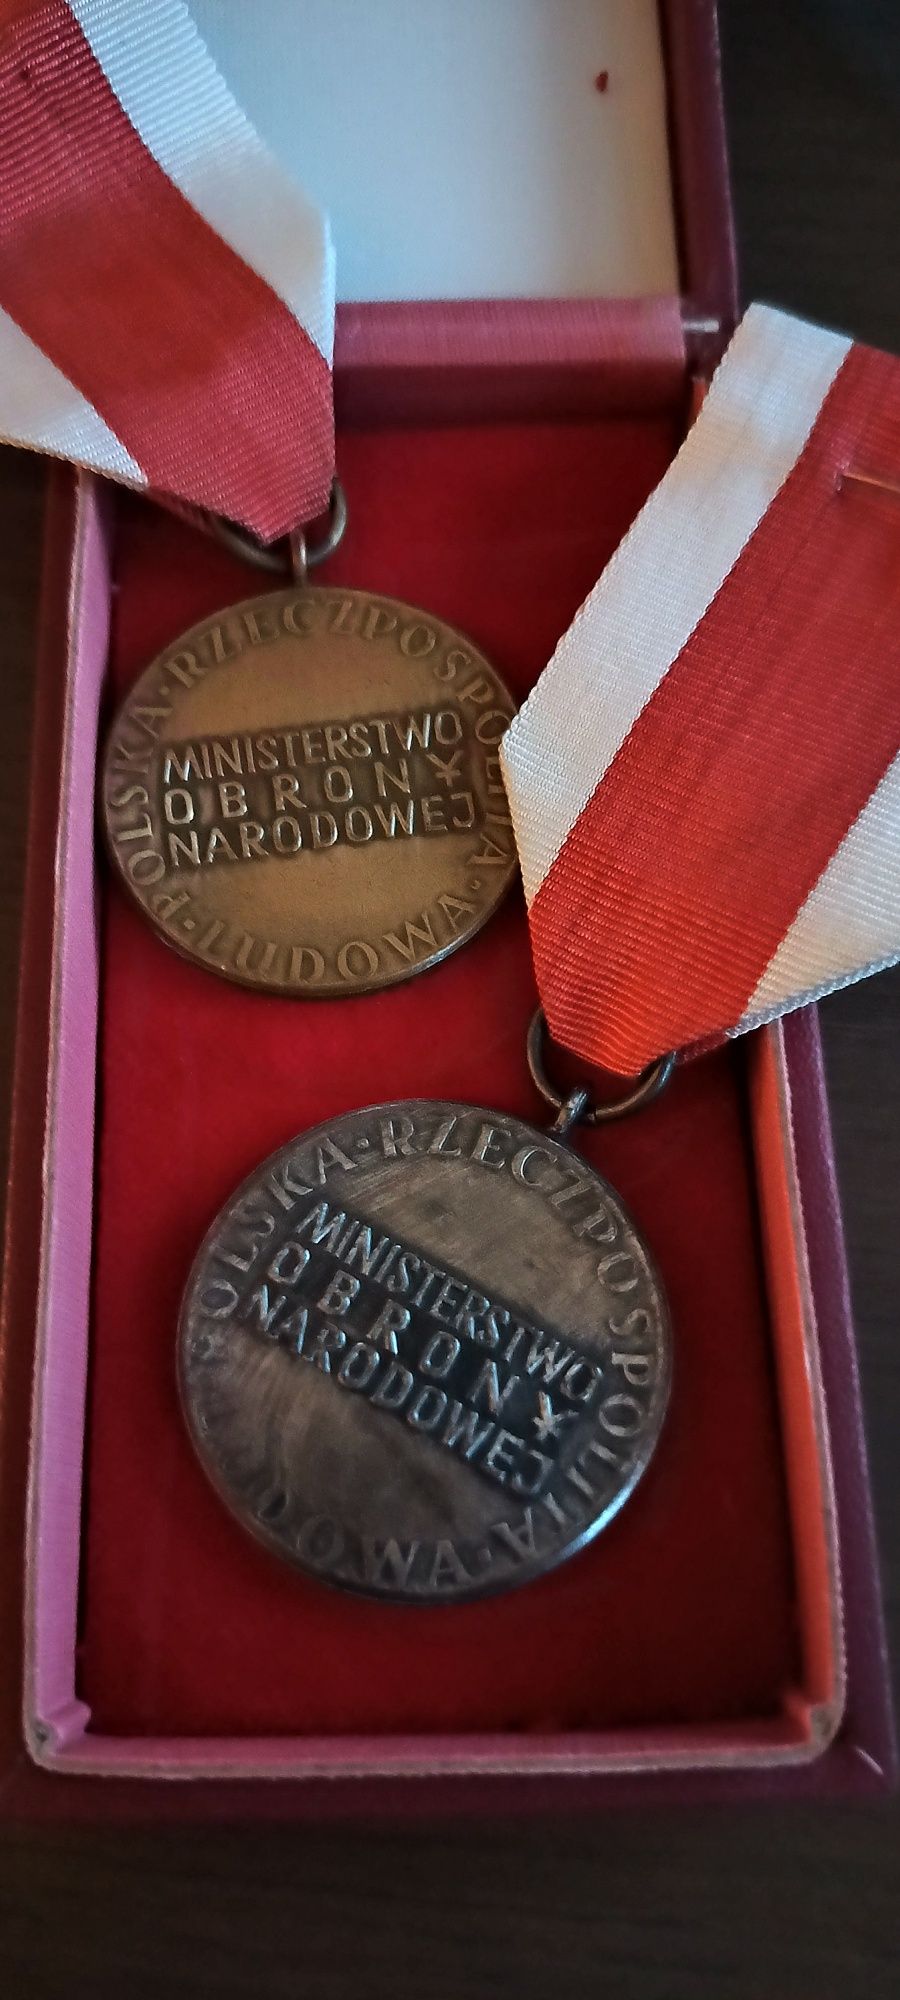 Medale ordery za zasługi dla obronności kraju PRL